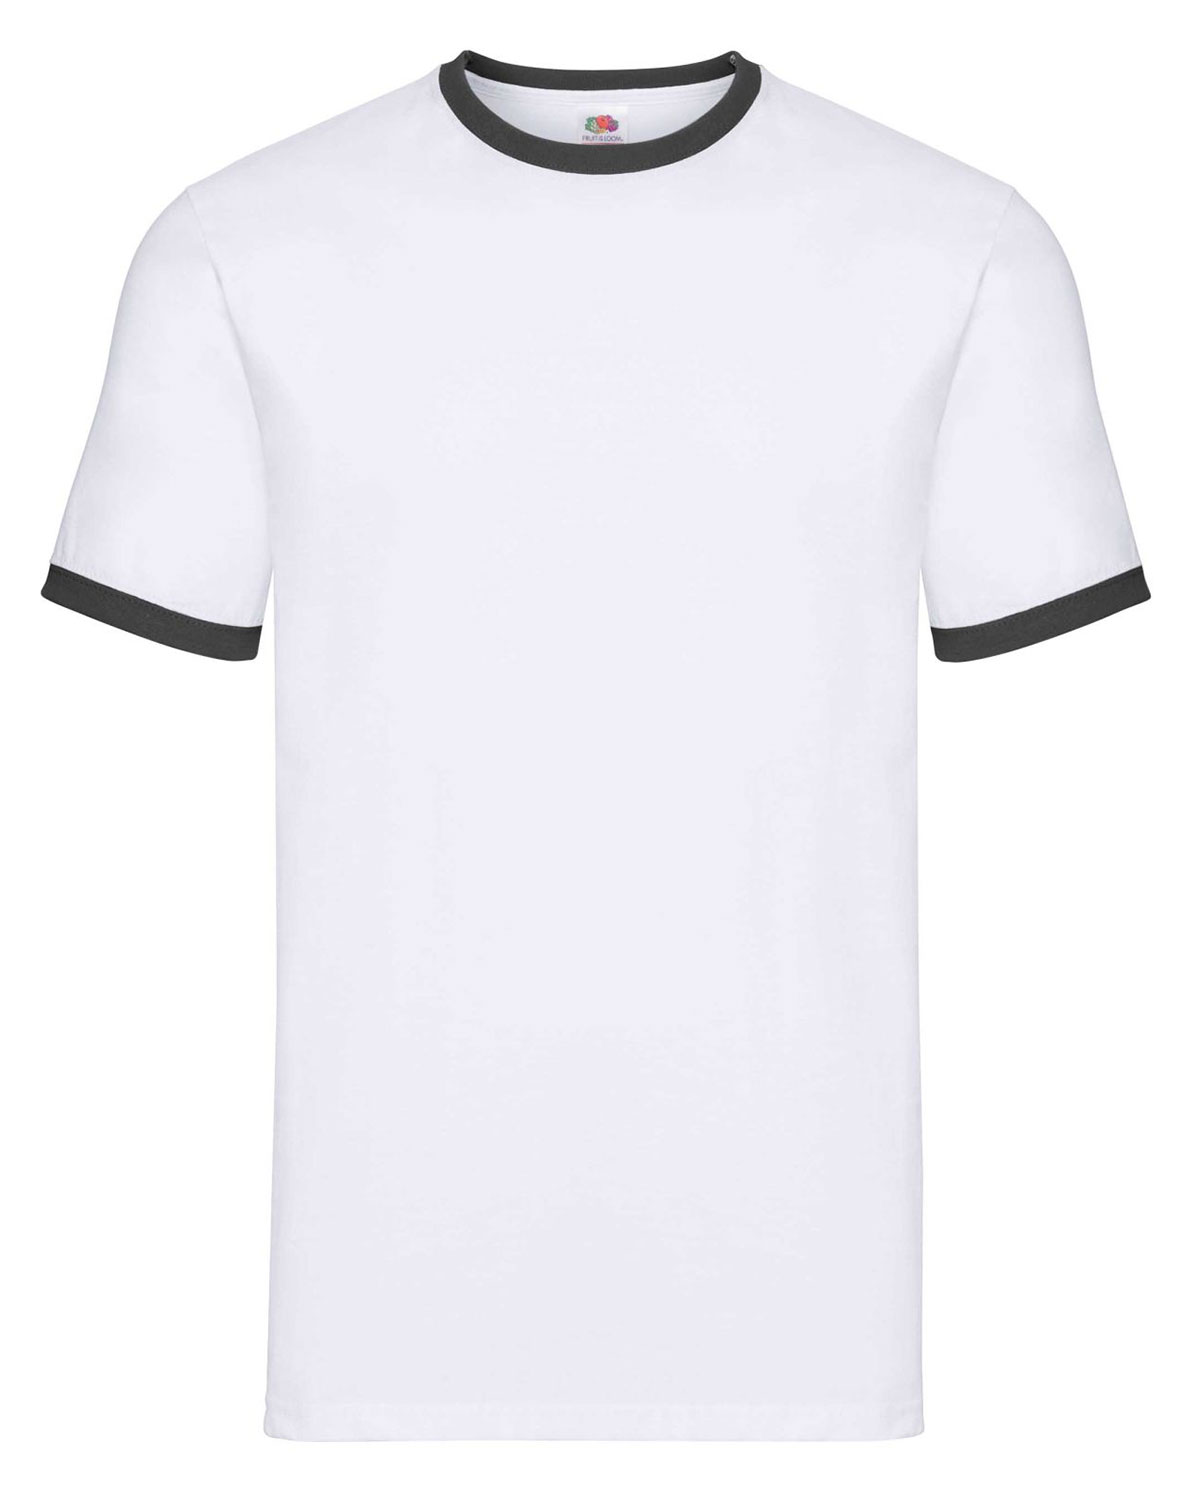 Ringer T-Shirt White/Black XXL